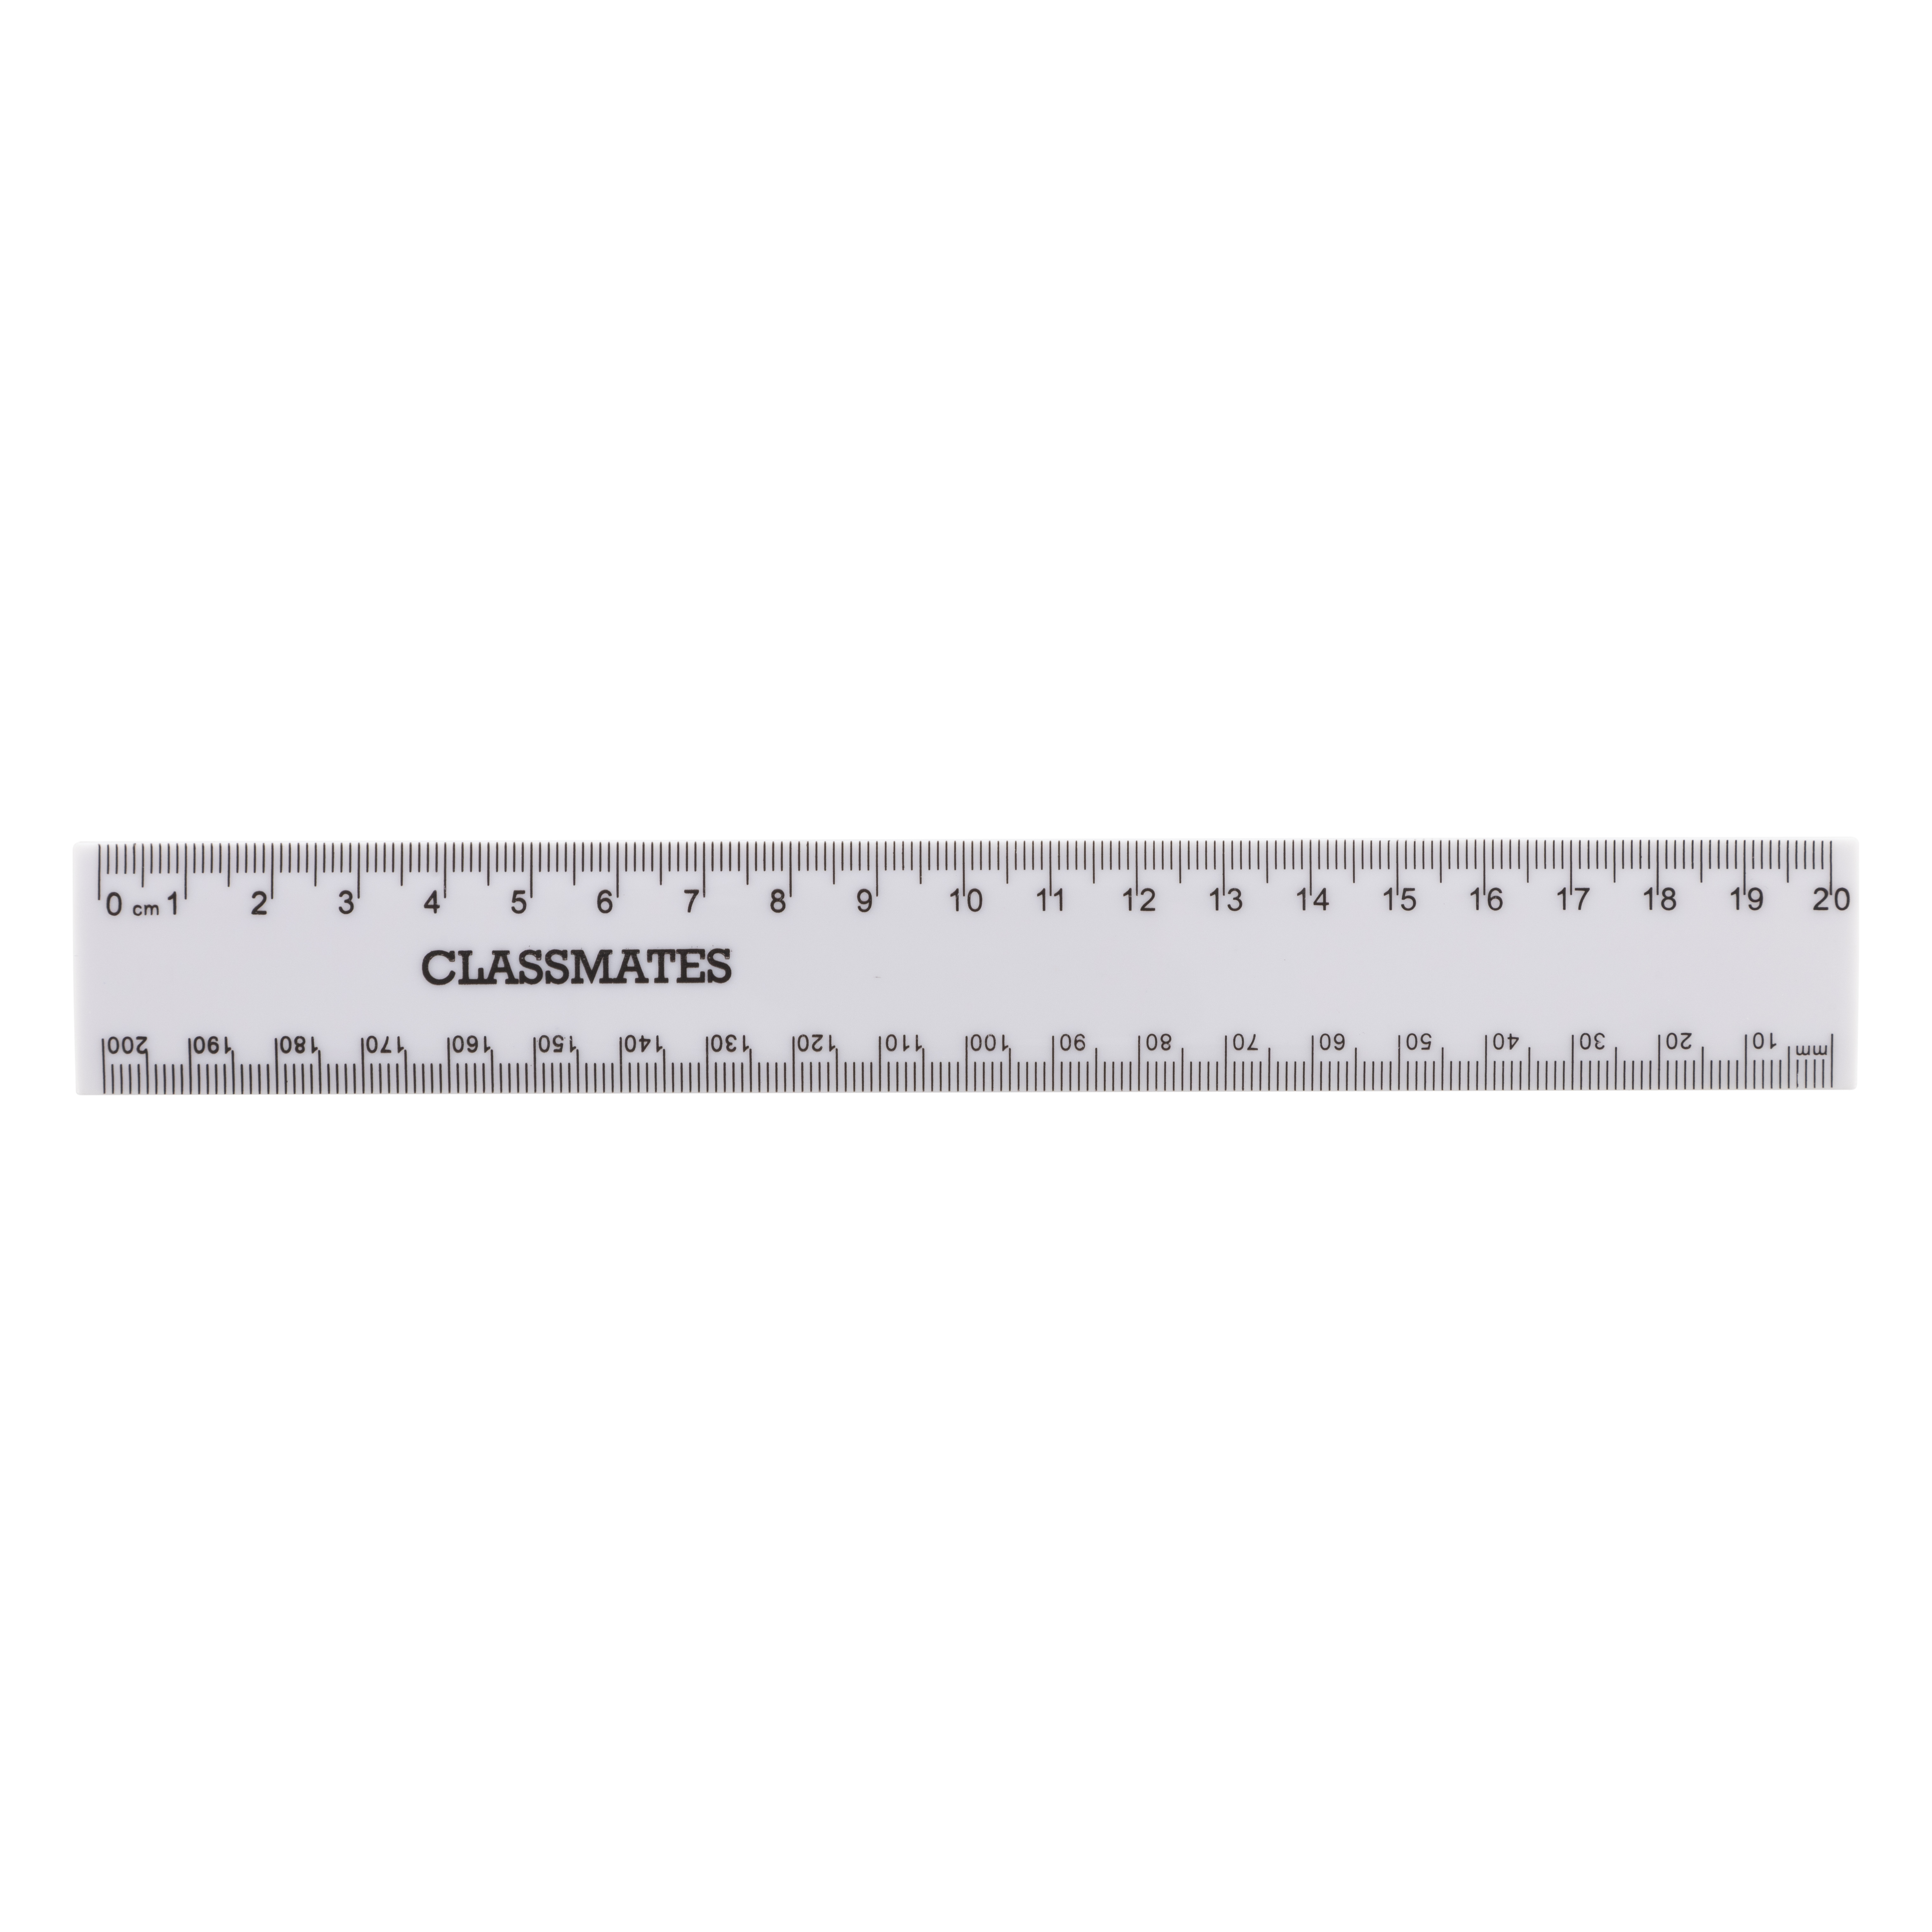 Shatterproof 20cm/mm Ruler White P10